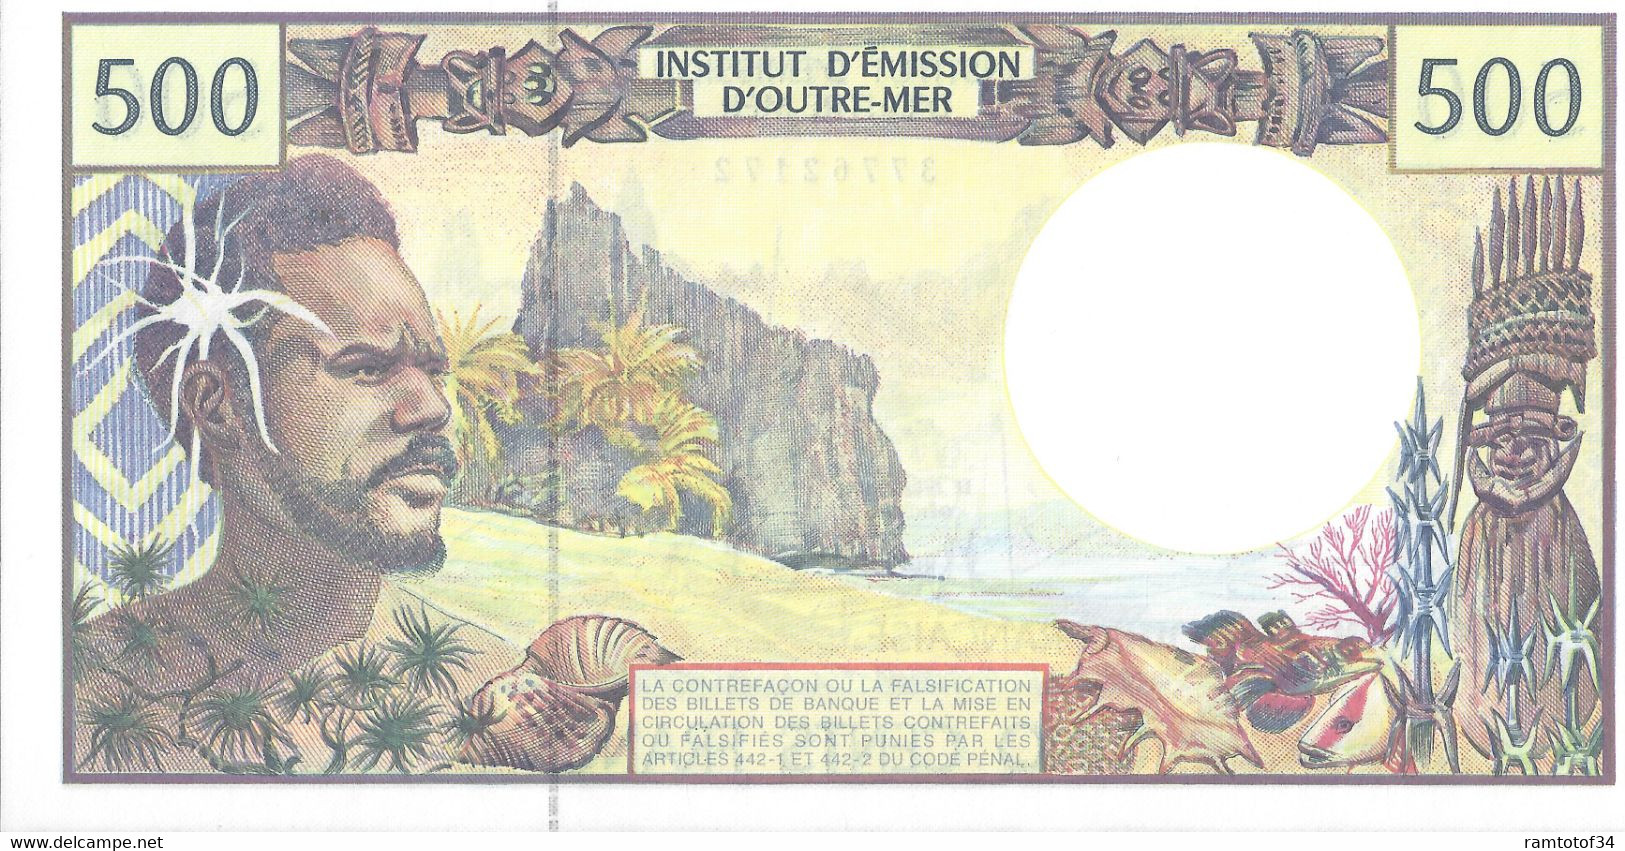 TAHITI - Institution D'émission D'outre-mer - 500 Francs UNC (37762172) - Papeete (Französisch-Polynesien 1914-1985)